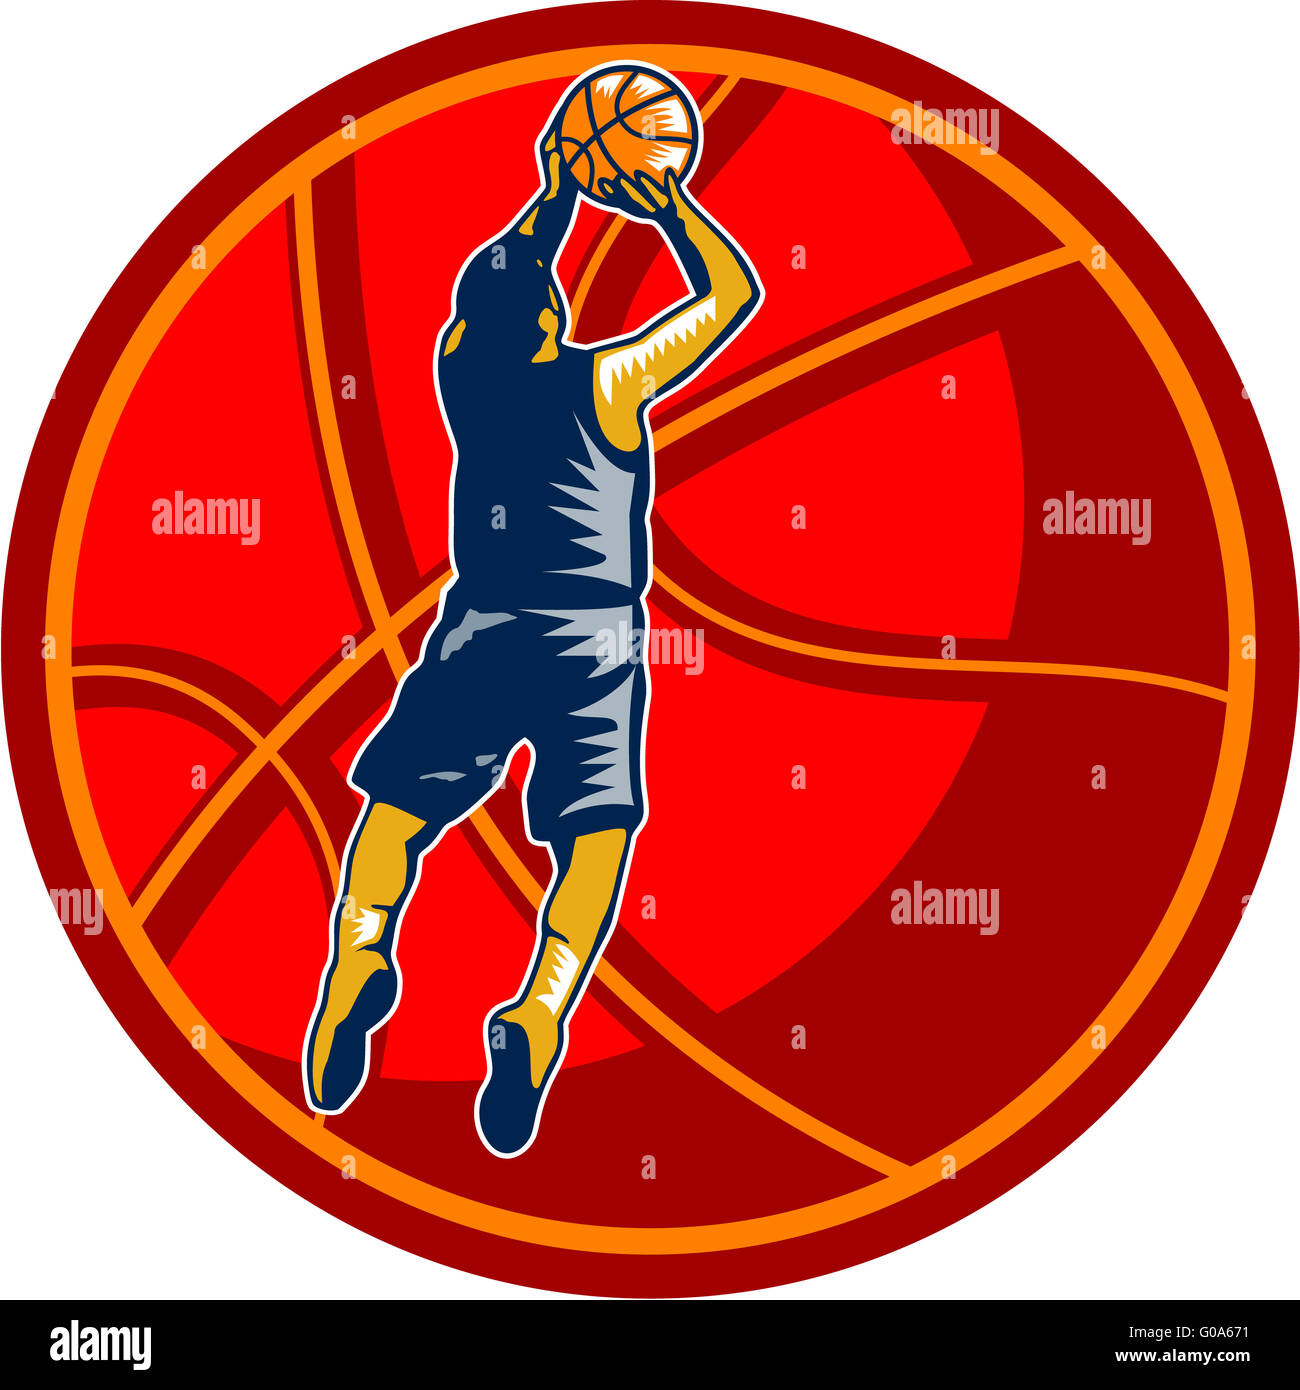 El jugador de baloncesto Jump Shot Ball xilografía retro Foto de stock